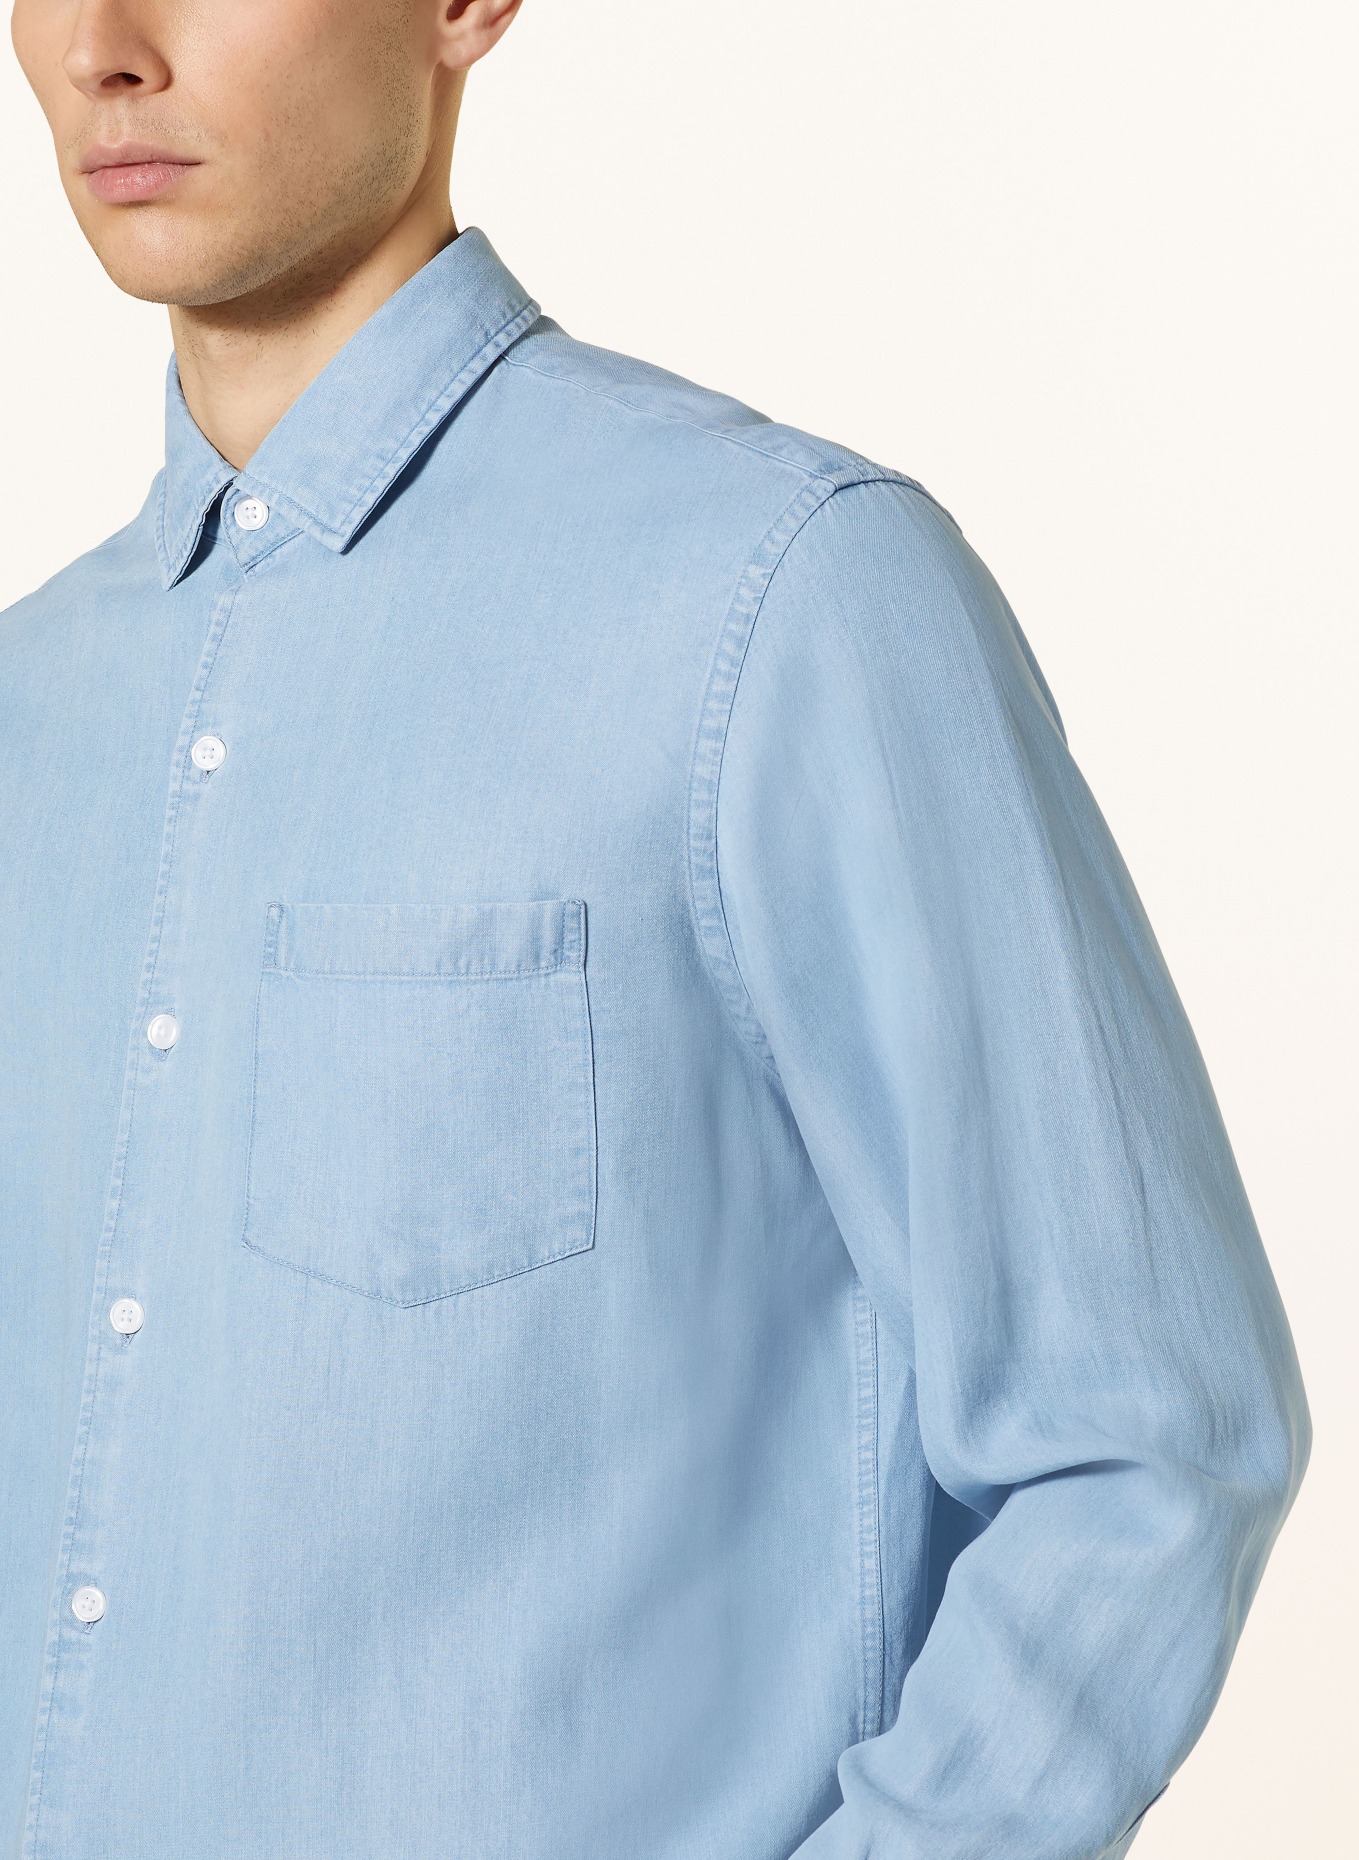 PAUL Shirt comfort fit, Color: 78705 light denim (Image 4)